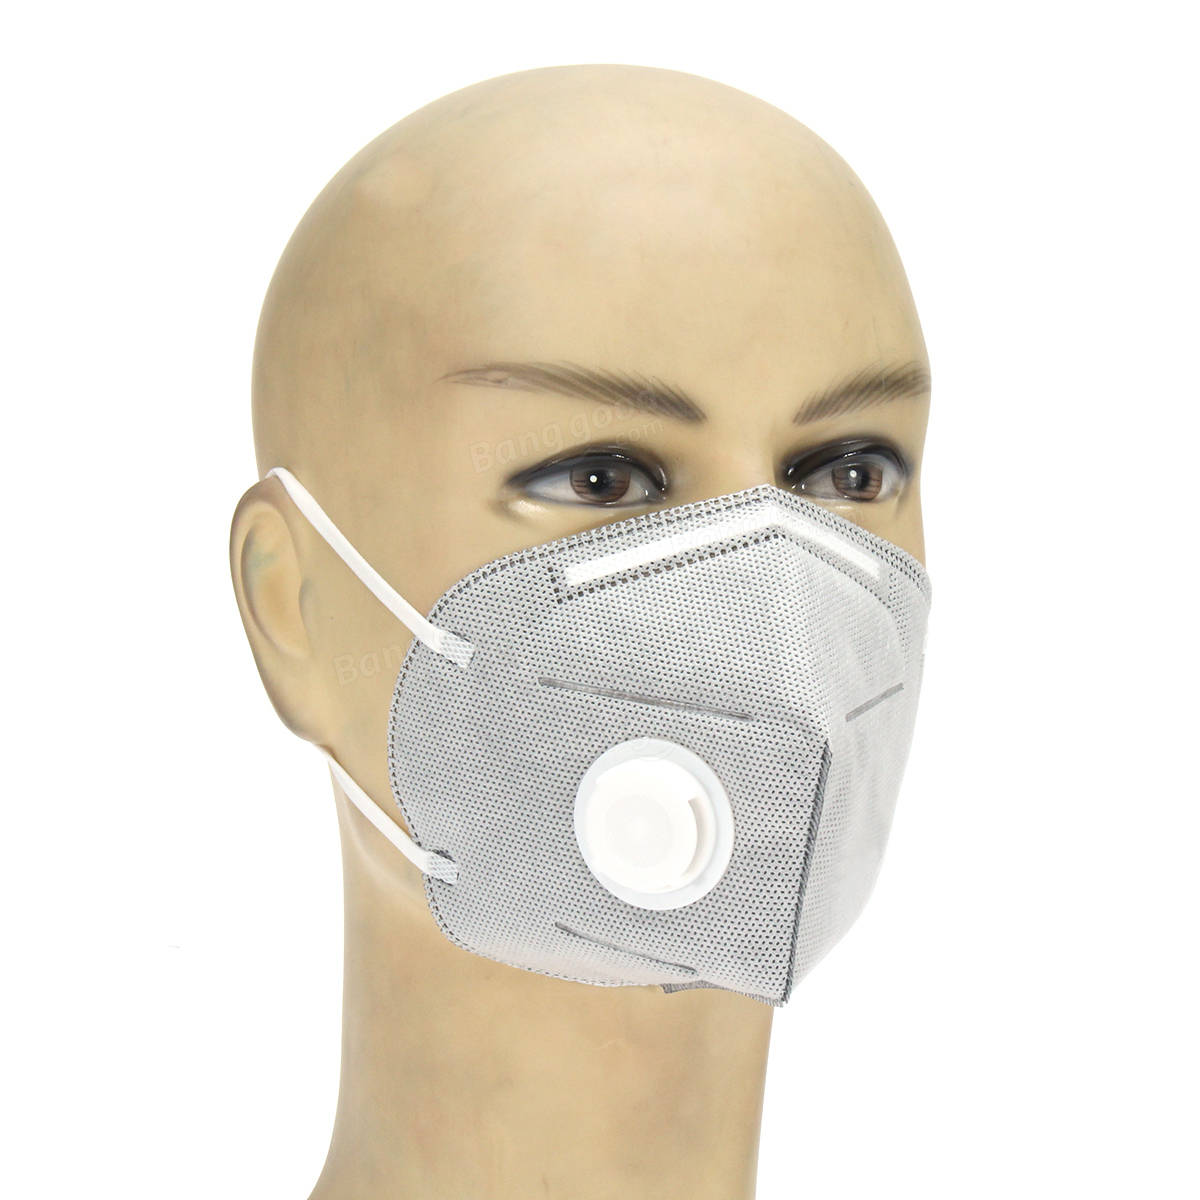 Классы защиты масок